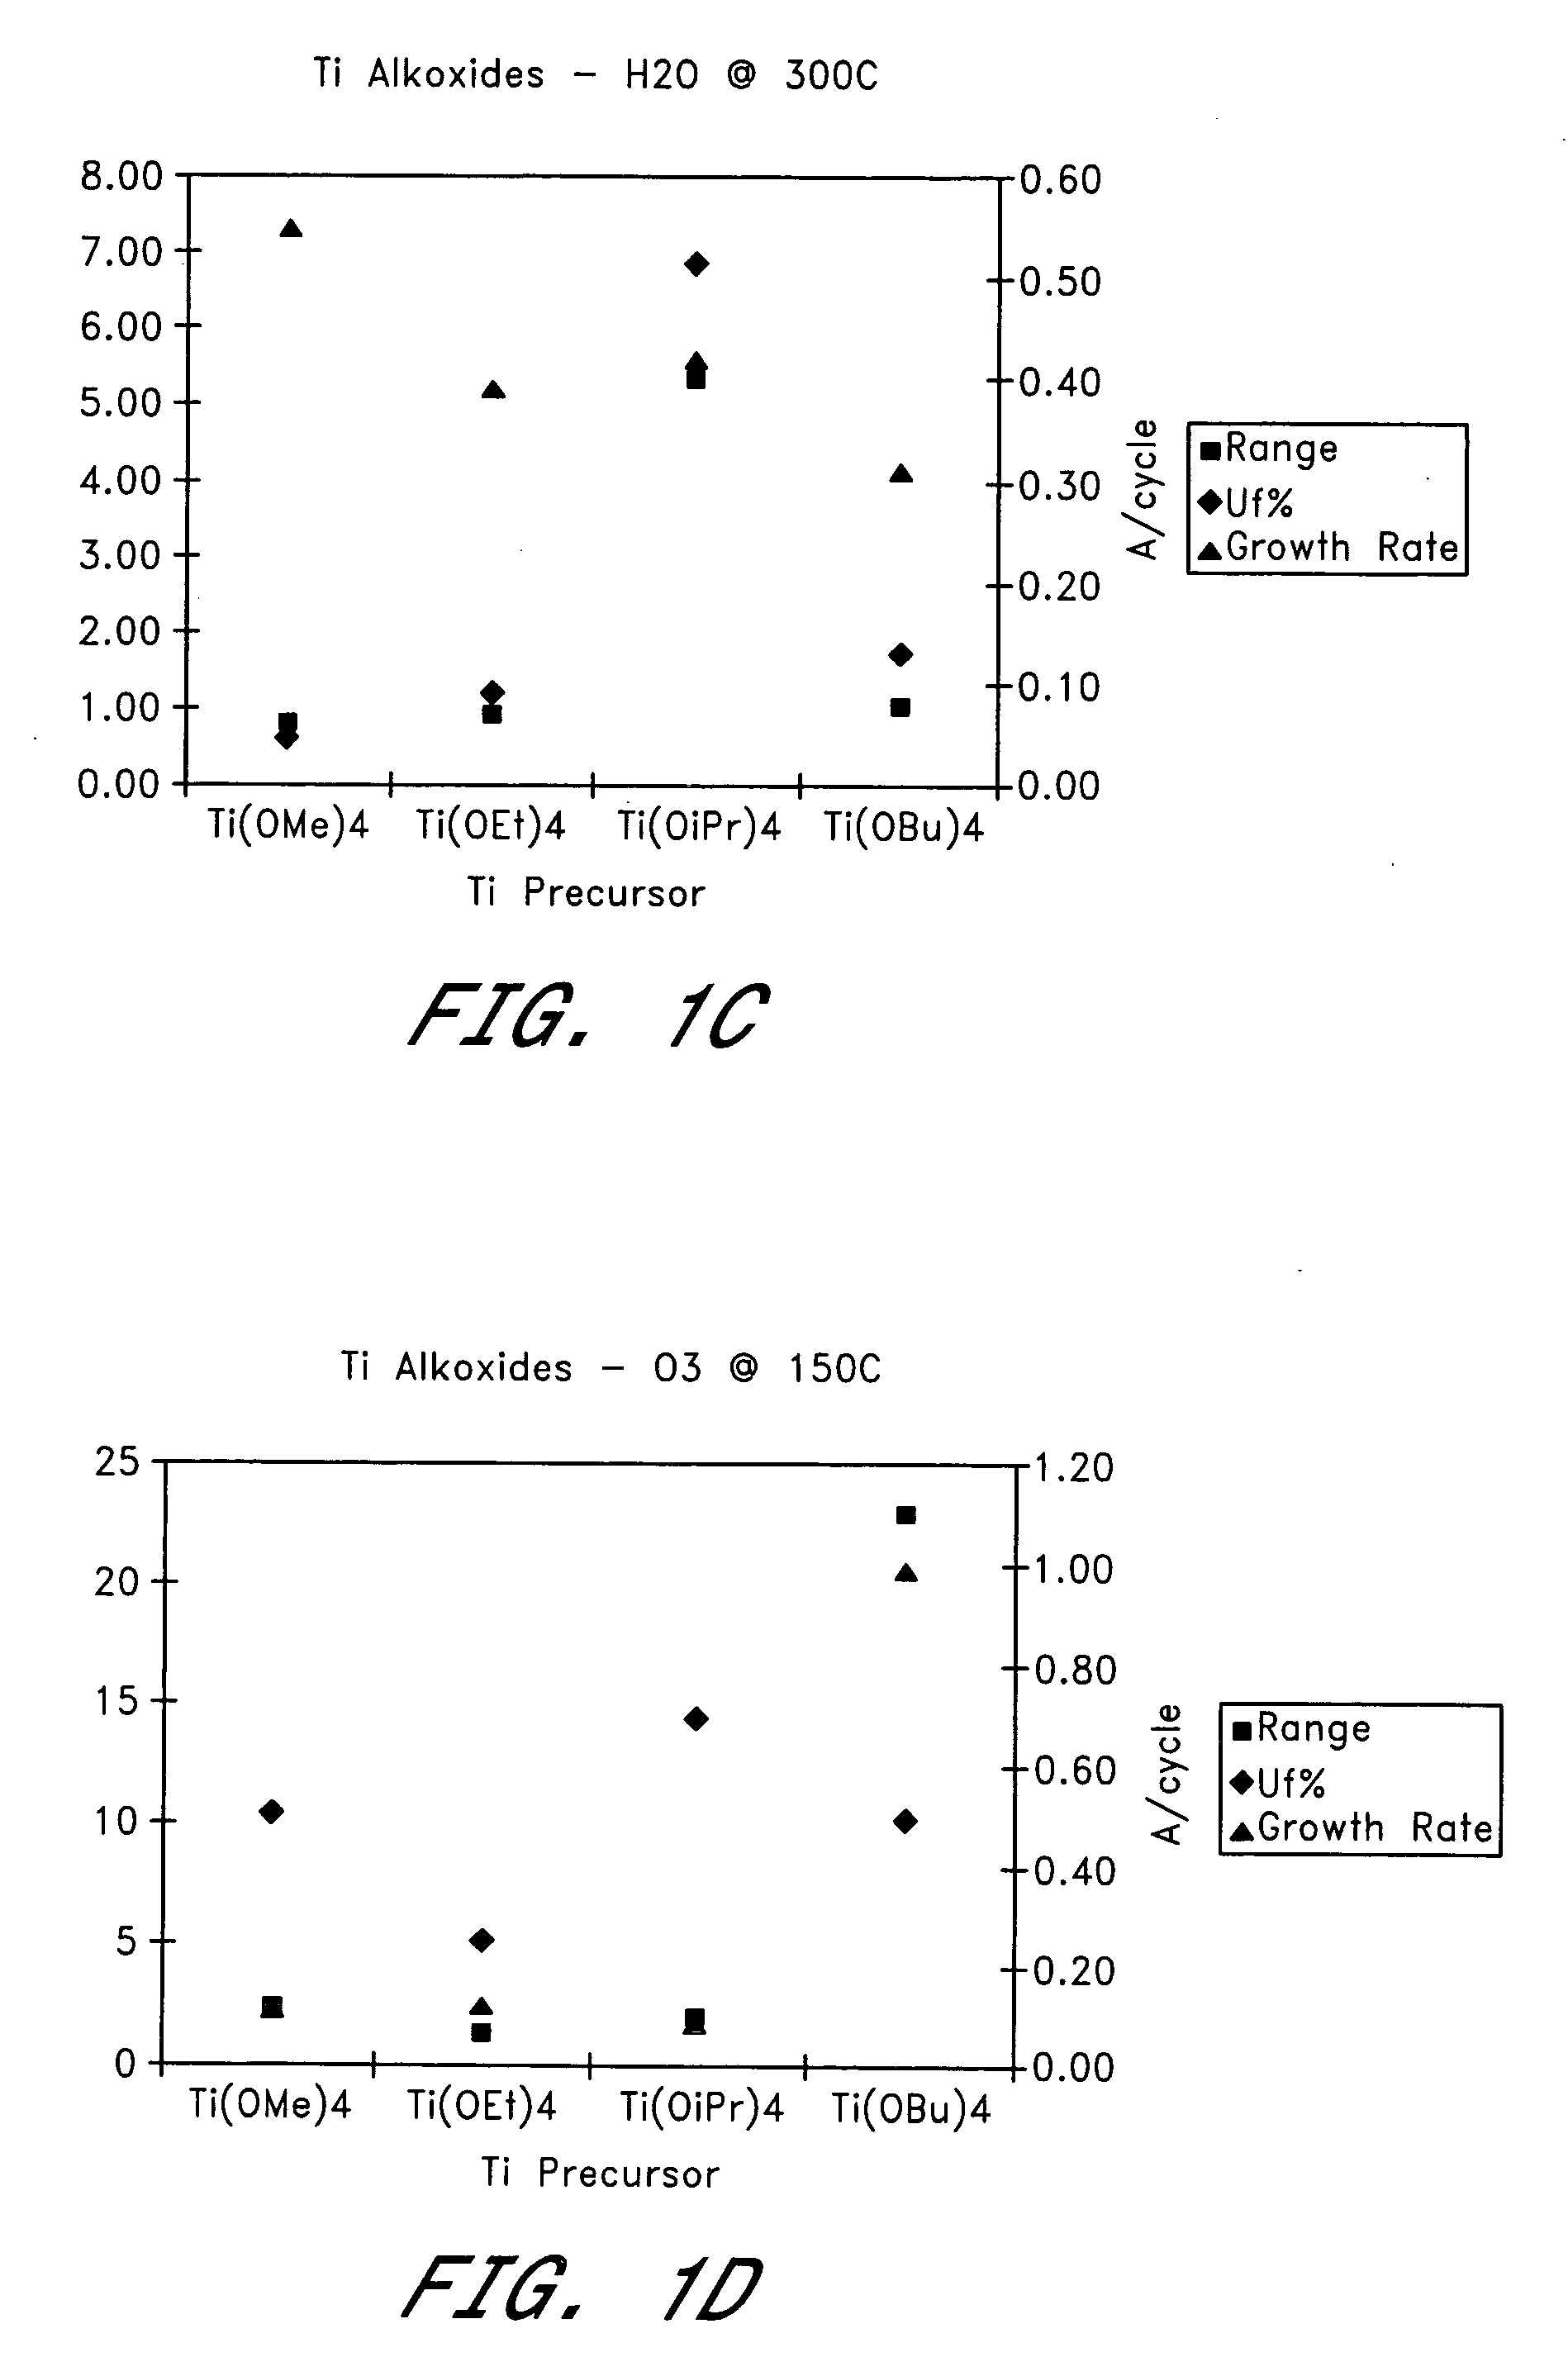 Oxide films containing titanium